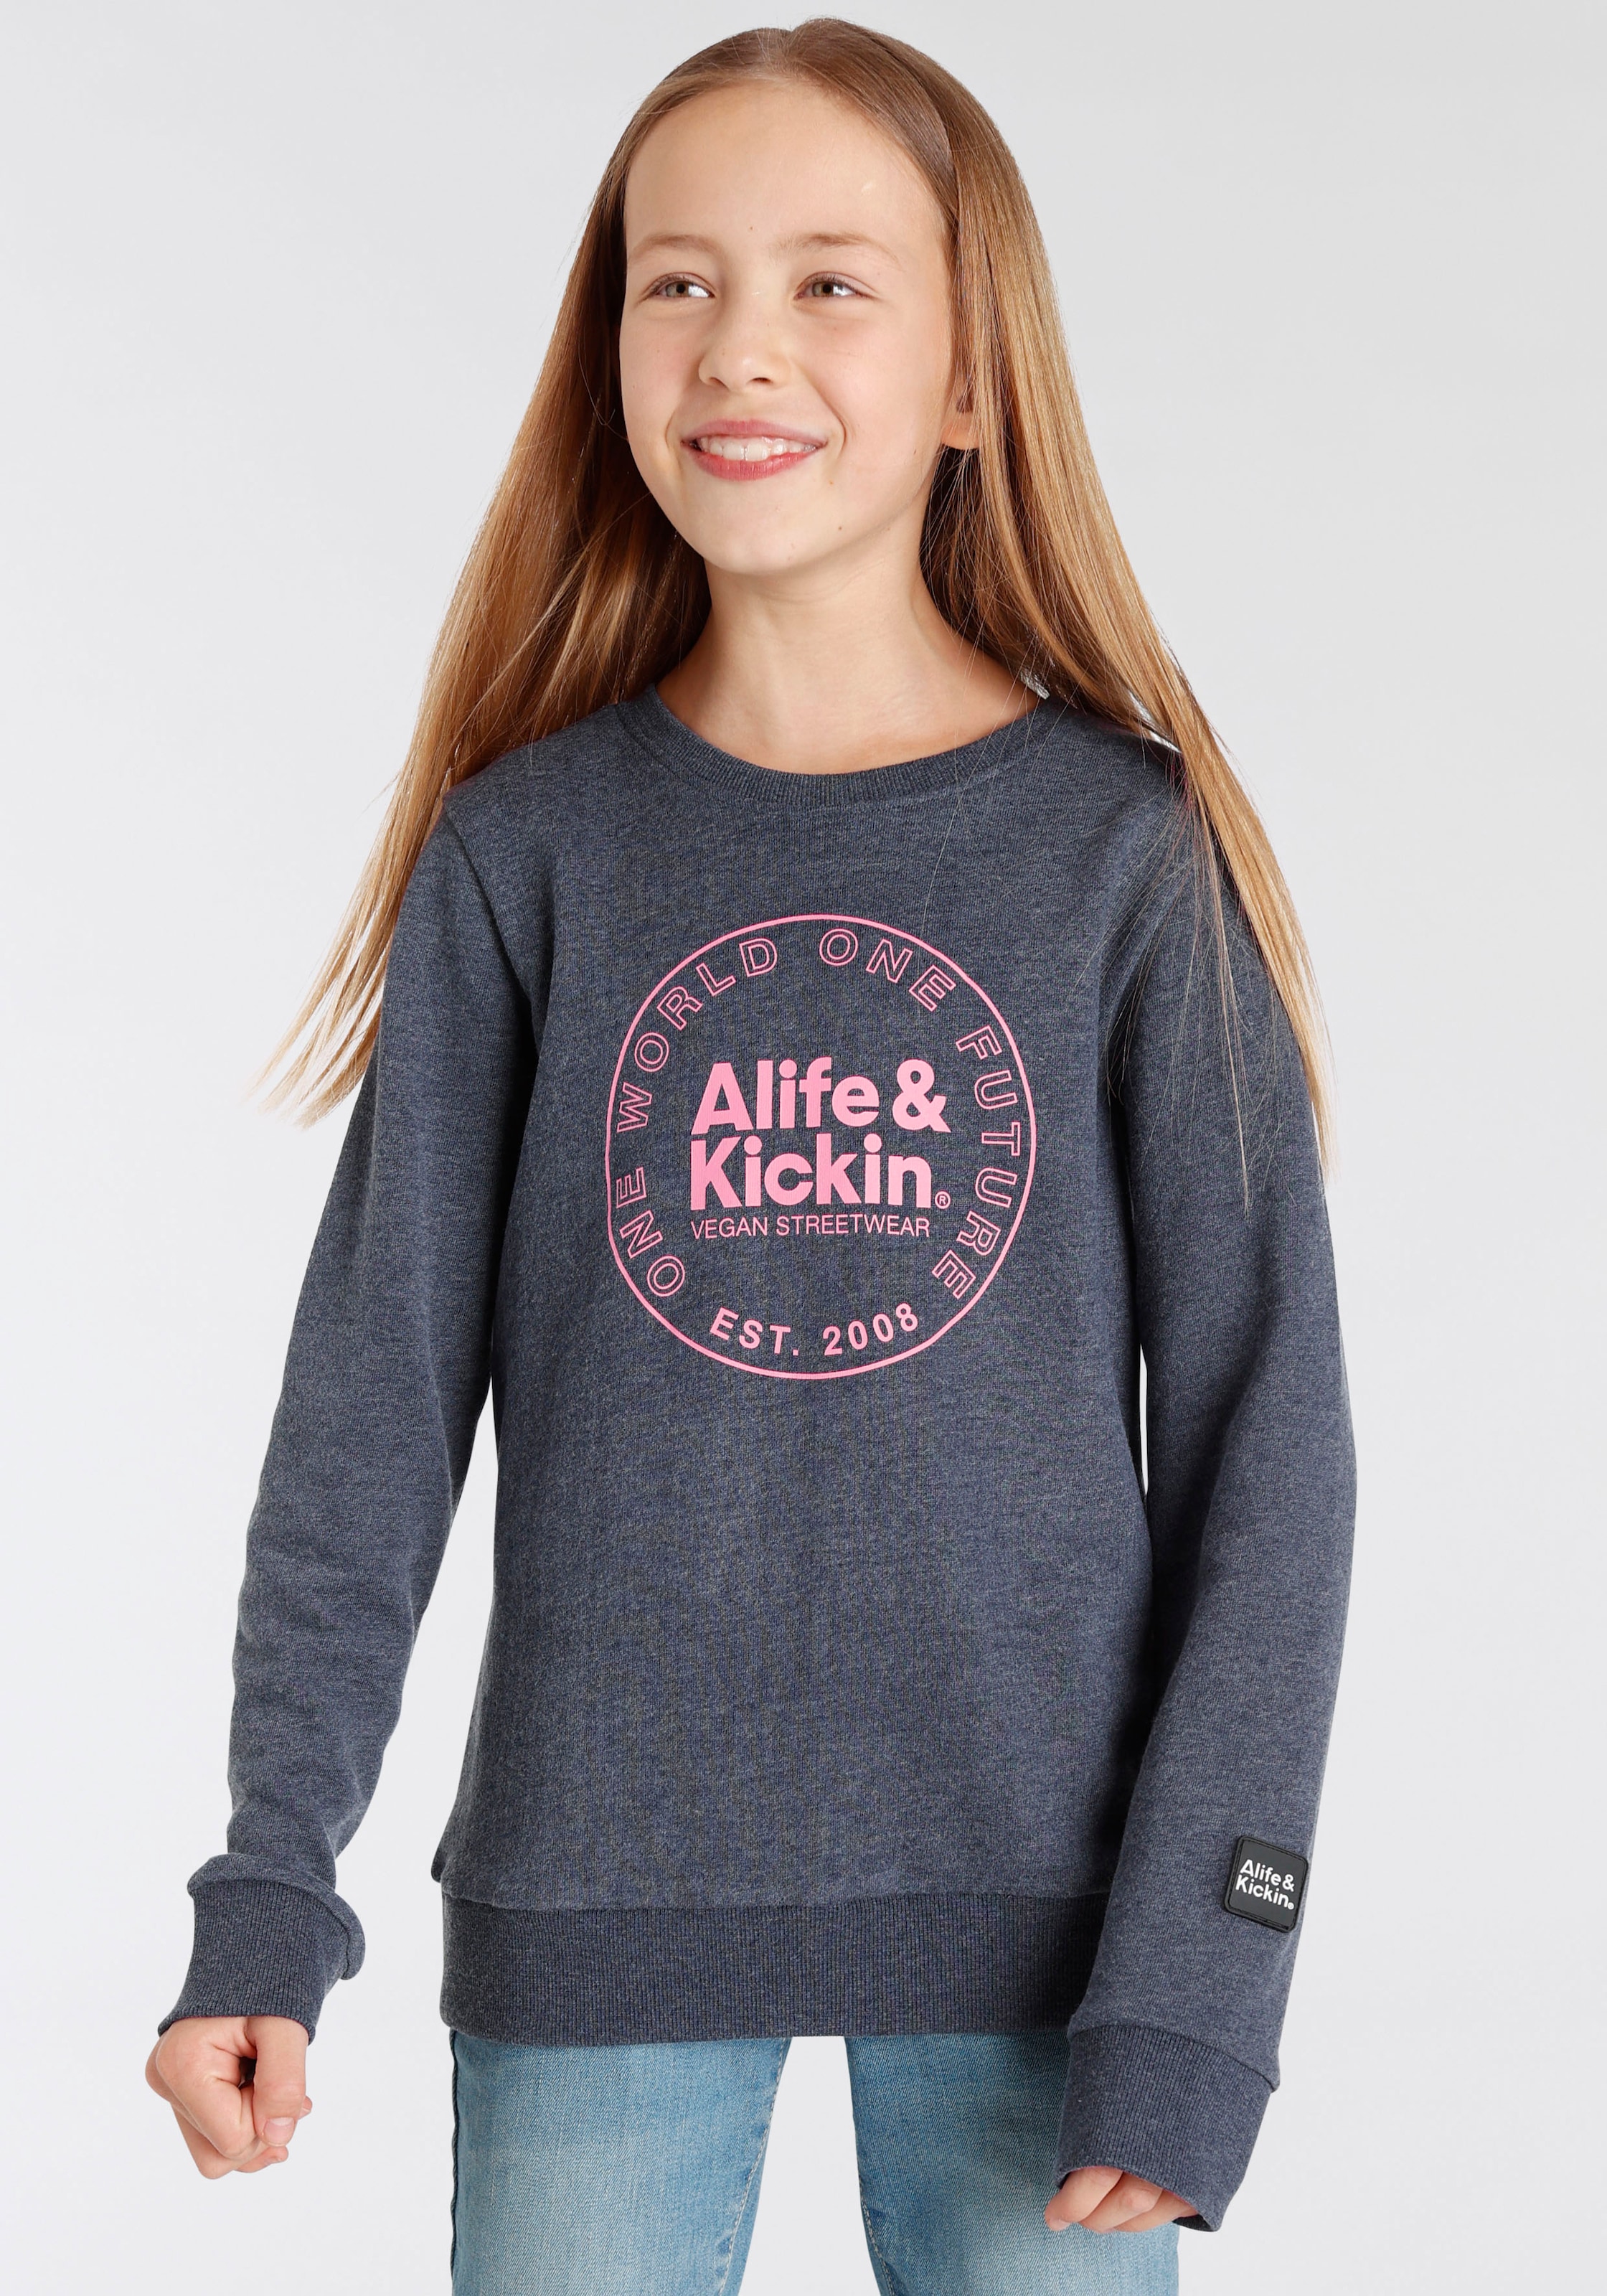 Mädchen kaufen online -jacken & ♕ Sweatshirts